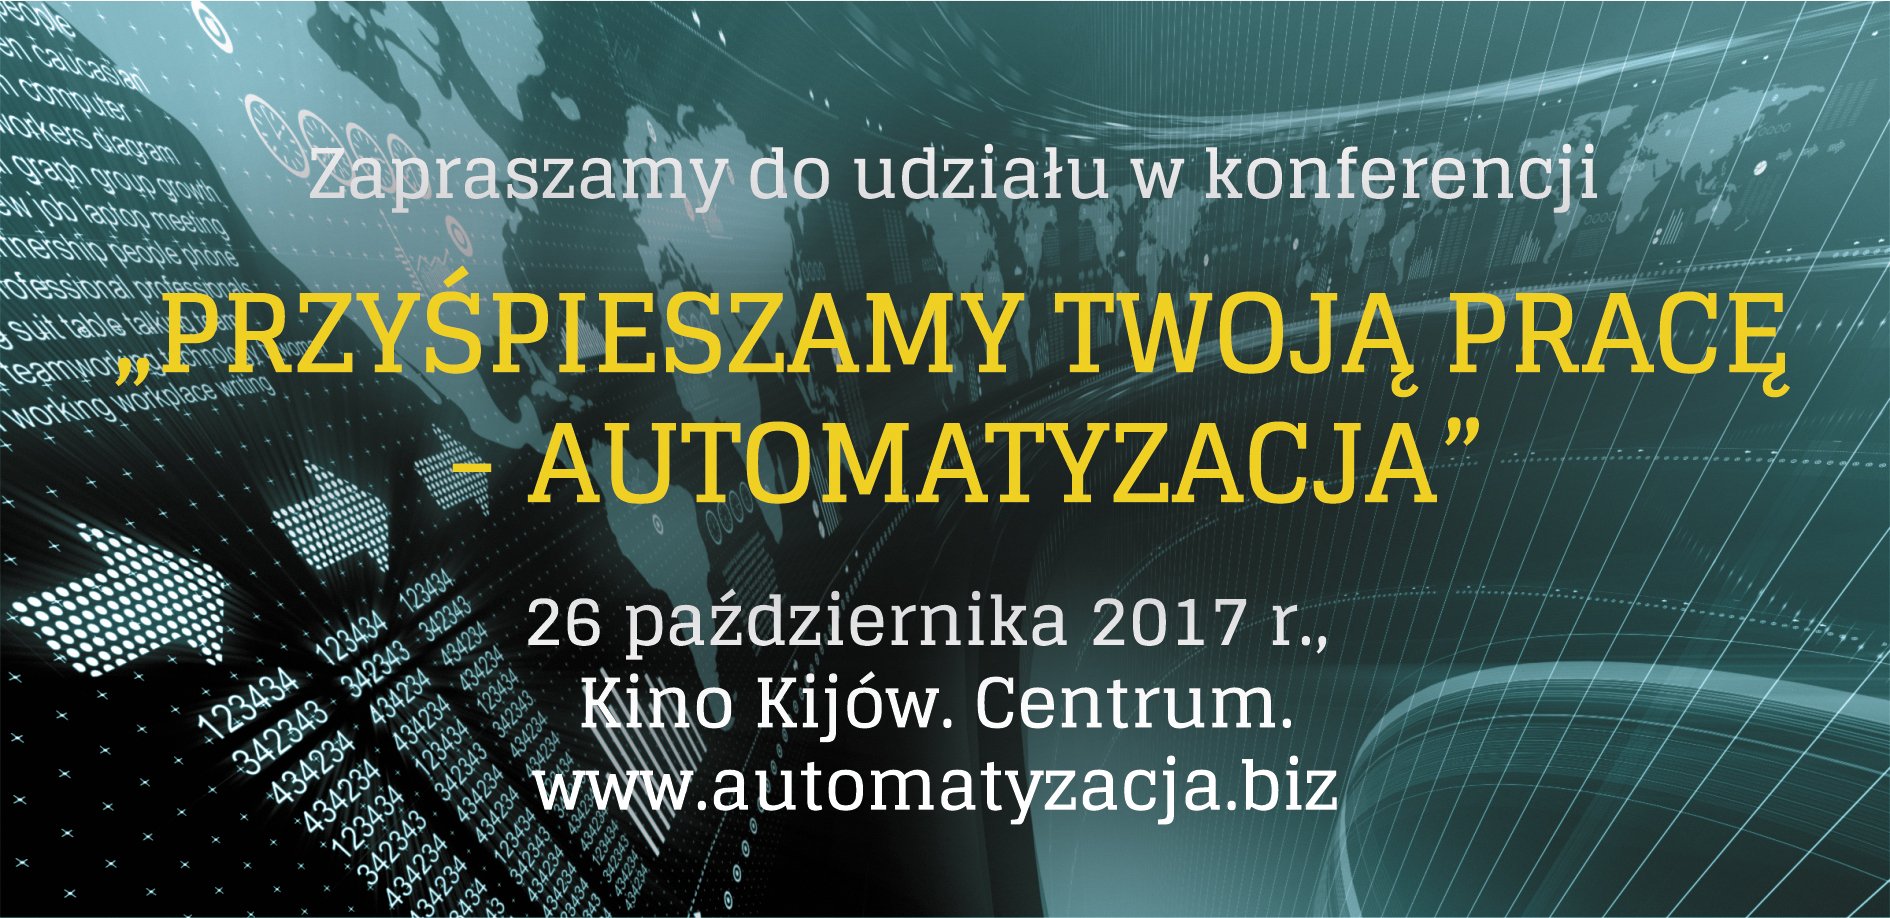 Plakat promujący konferencję poświęconą automatyzacji procesów